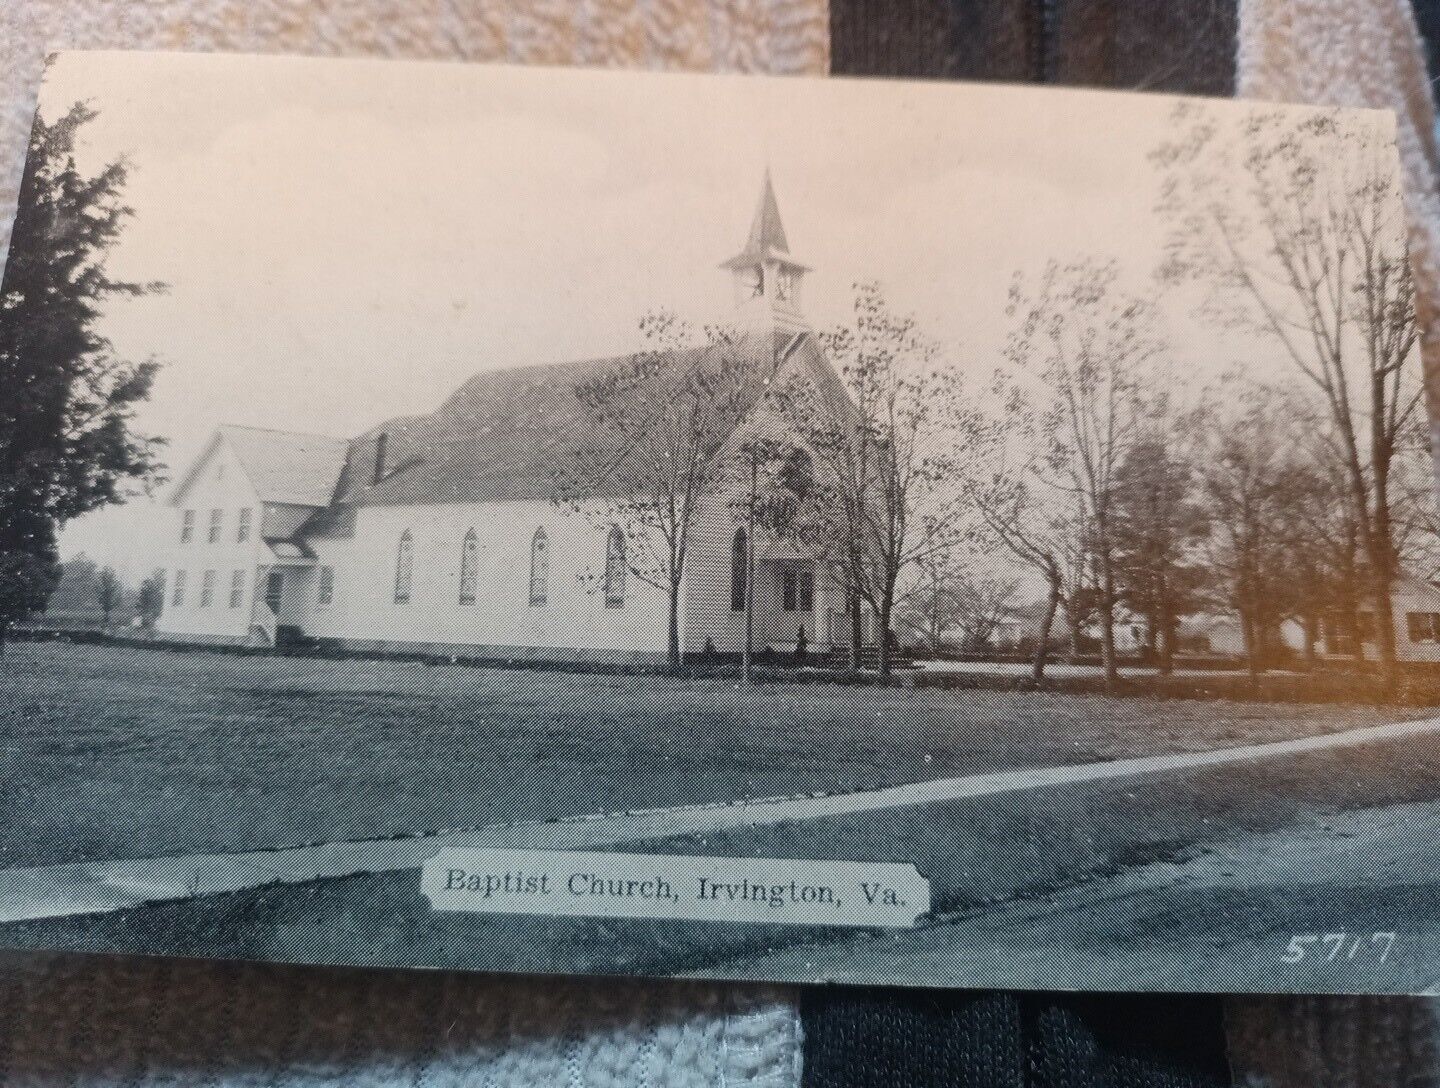 1938 Baptist Church Irvington Virginia postcard a40